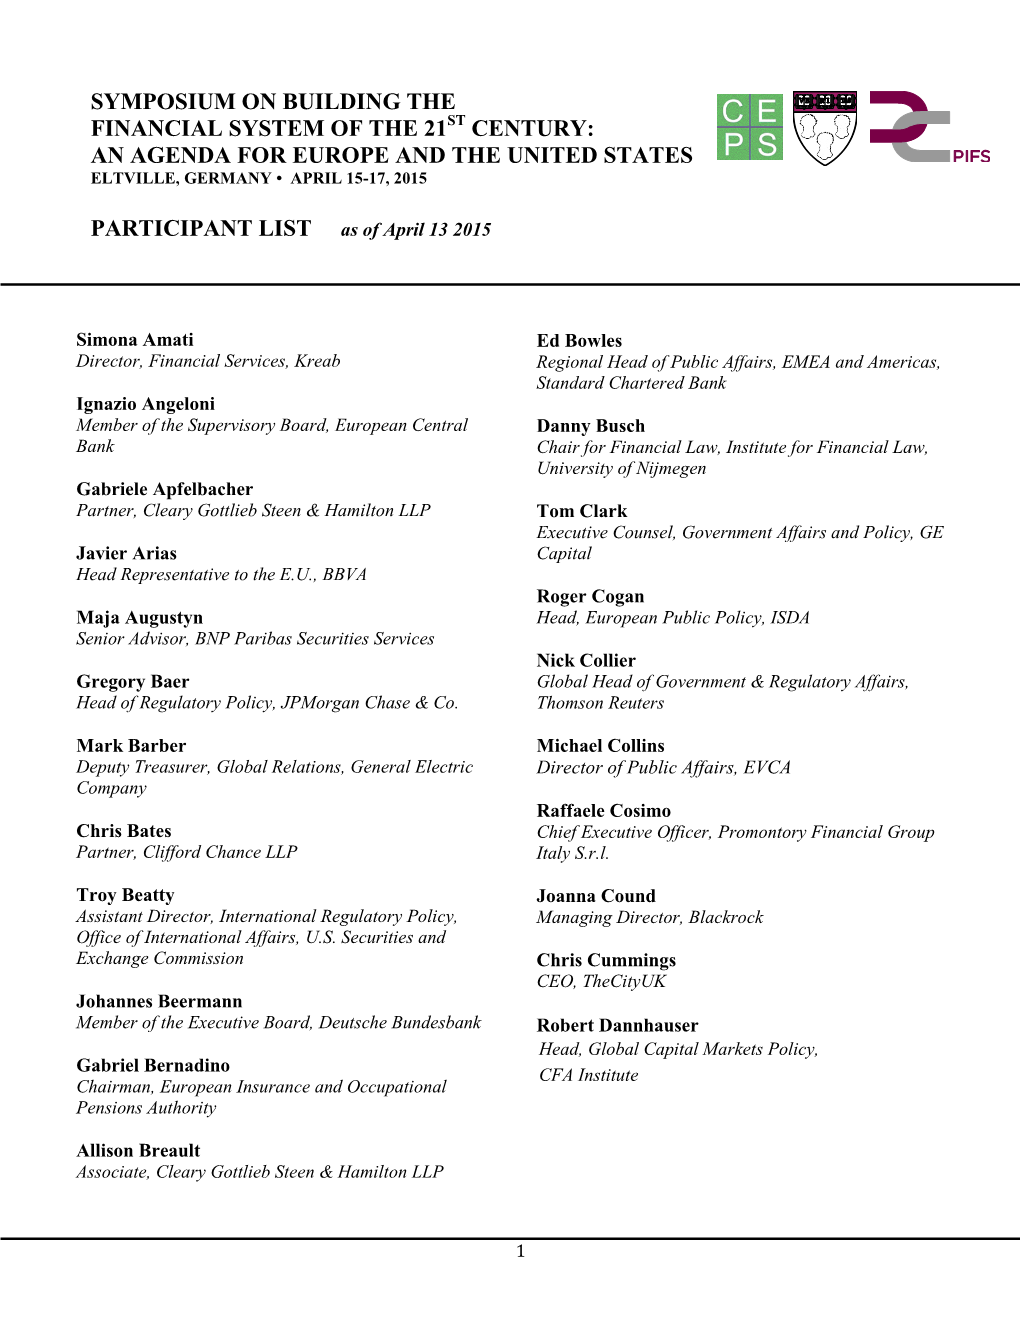 2015 Europe – US Symposium Participant List